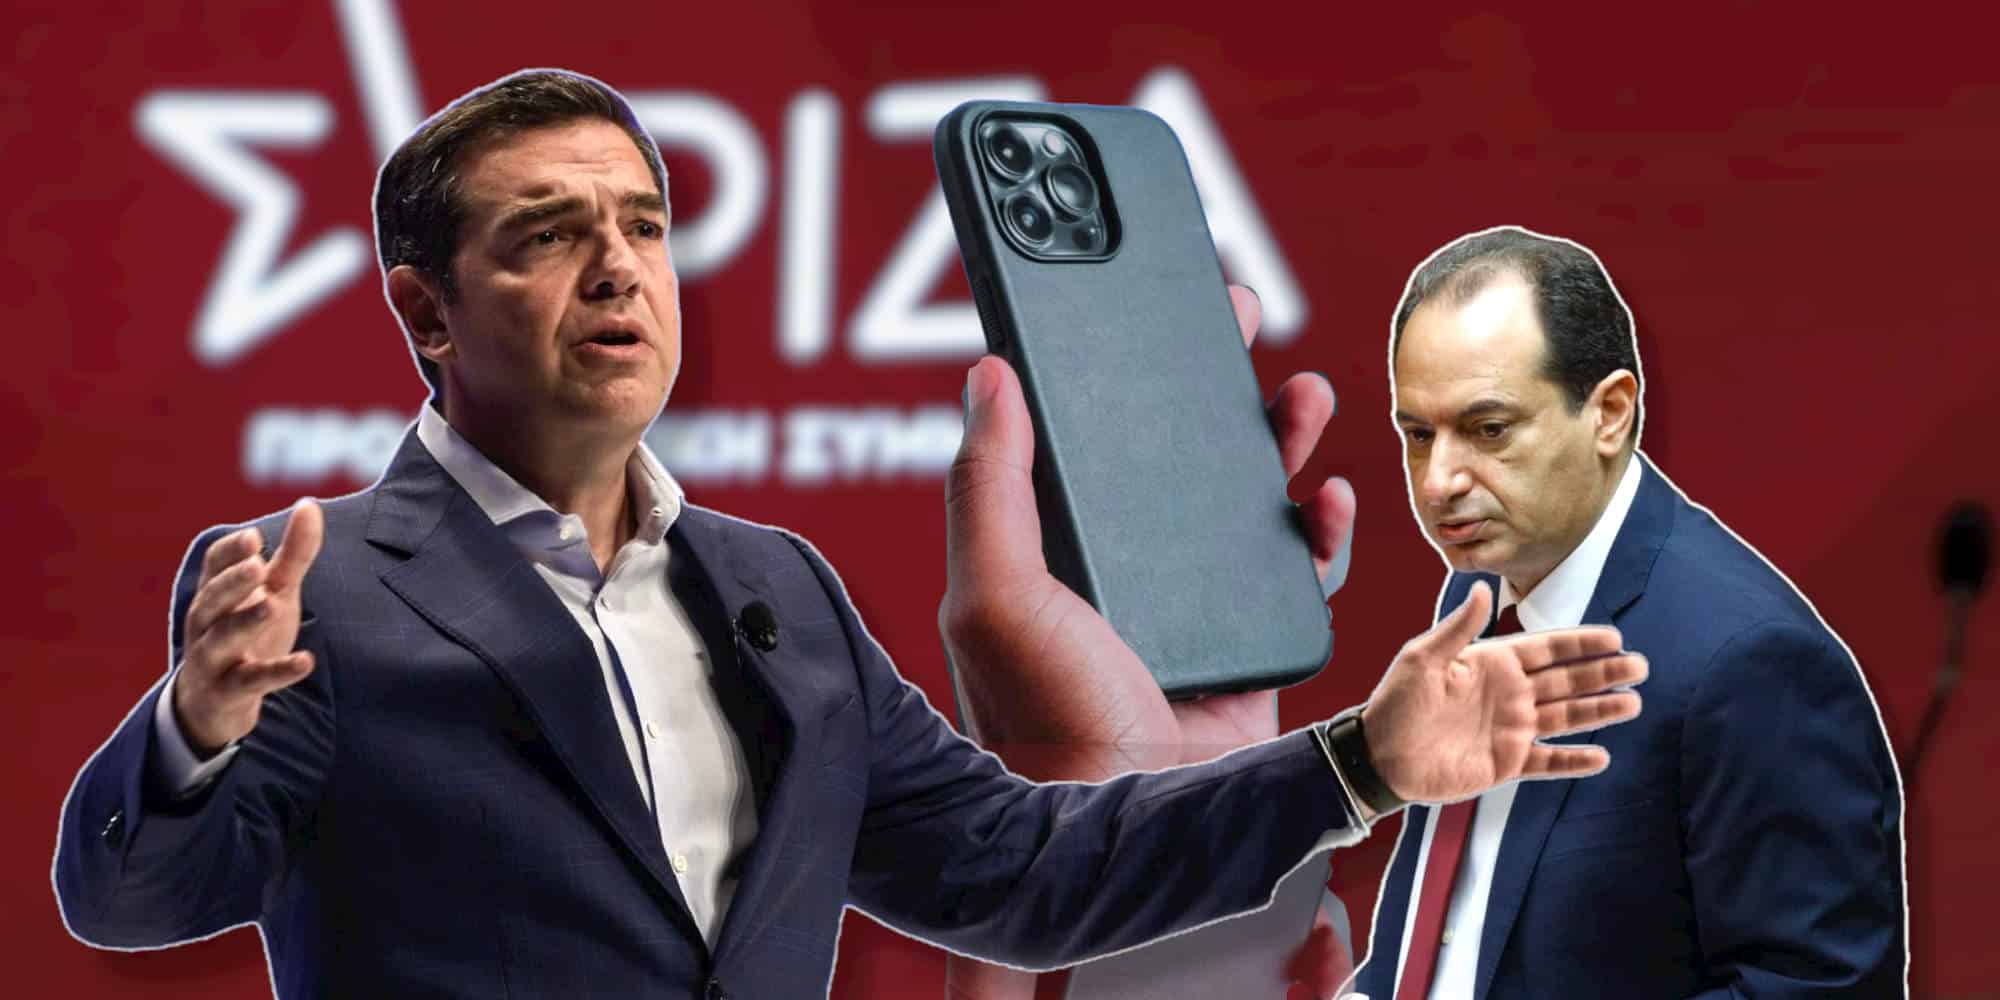 Ο ΣΥΡΙΖΑ σηκώνει τους τόνους στο θέμα των παρακολουθήσεων, στην εικόνα ο Αλέξης Τσίπρας και ο Χρήστος Σπίρτζης